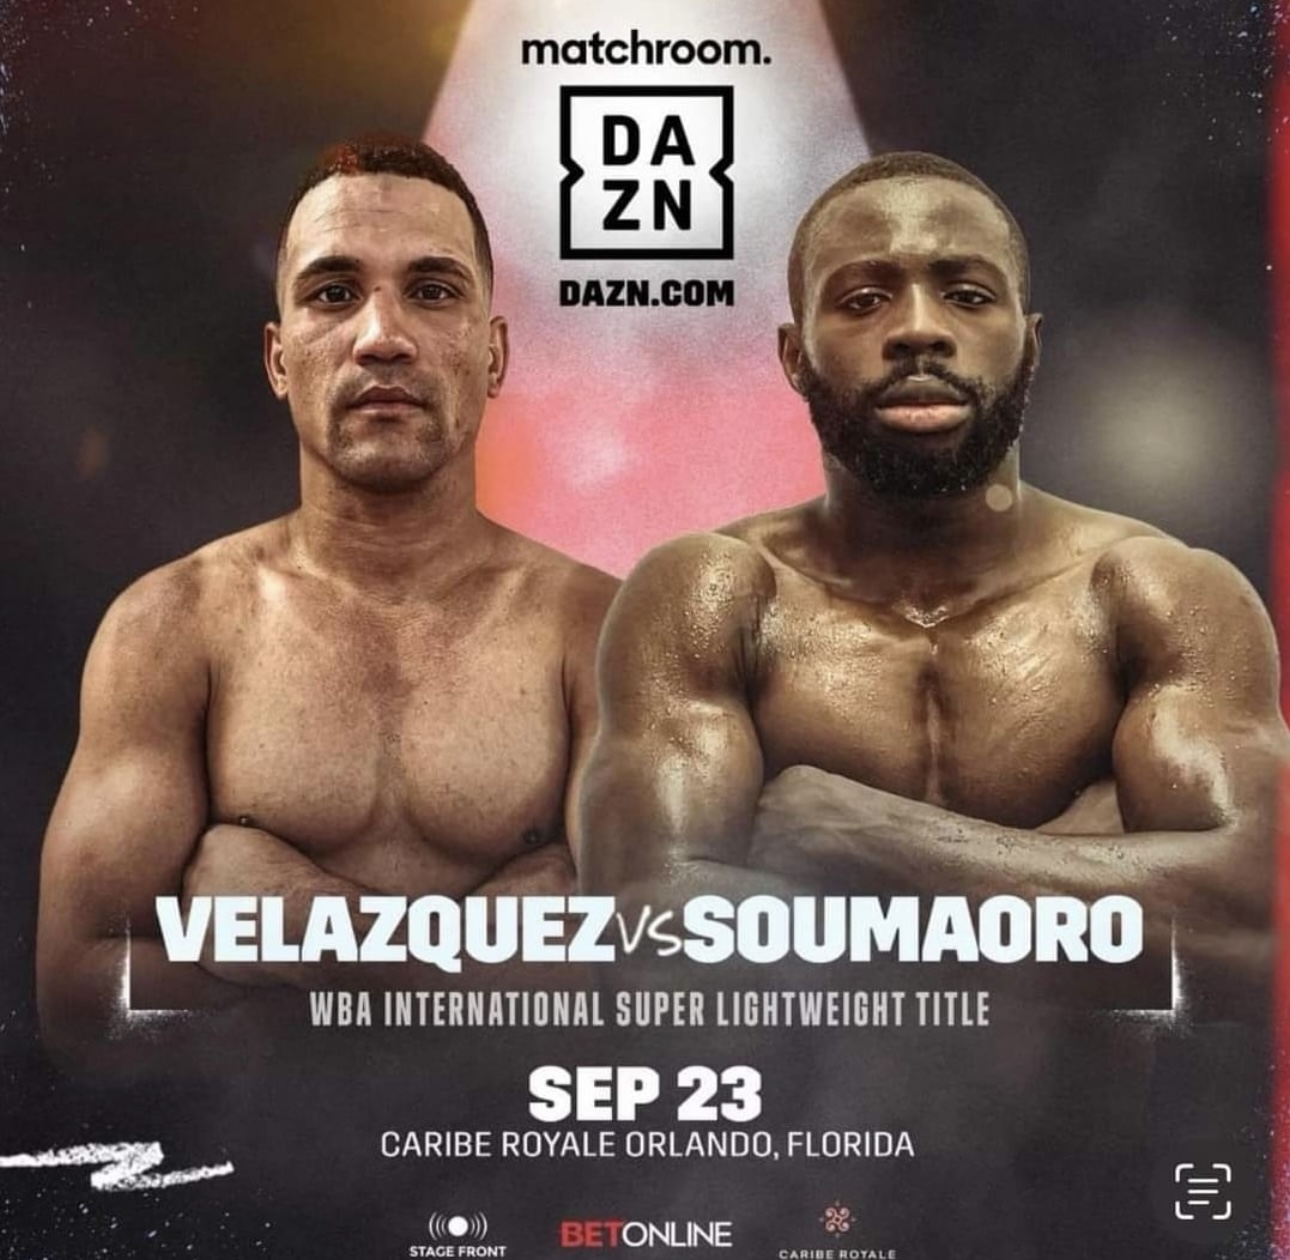 Velazquez-Soumaoro will set the fire in Orlando 